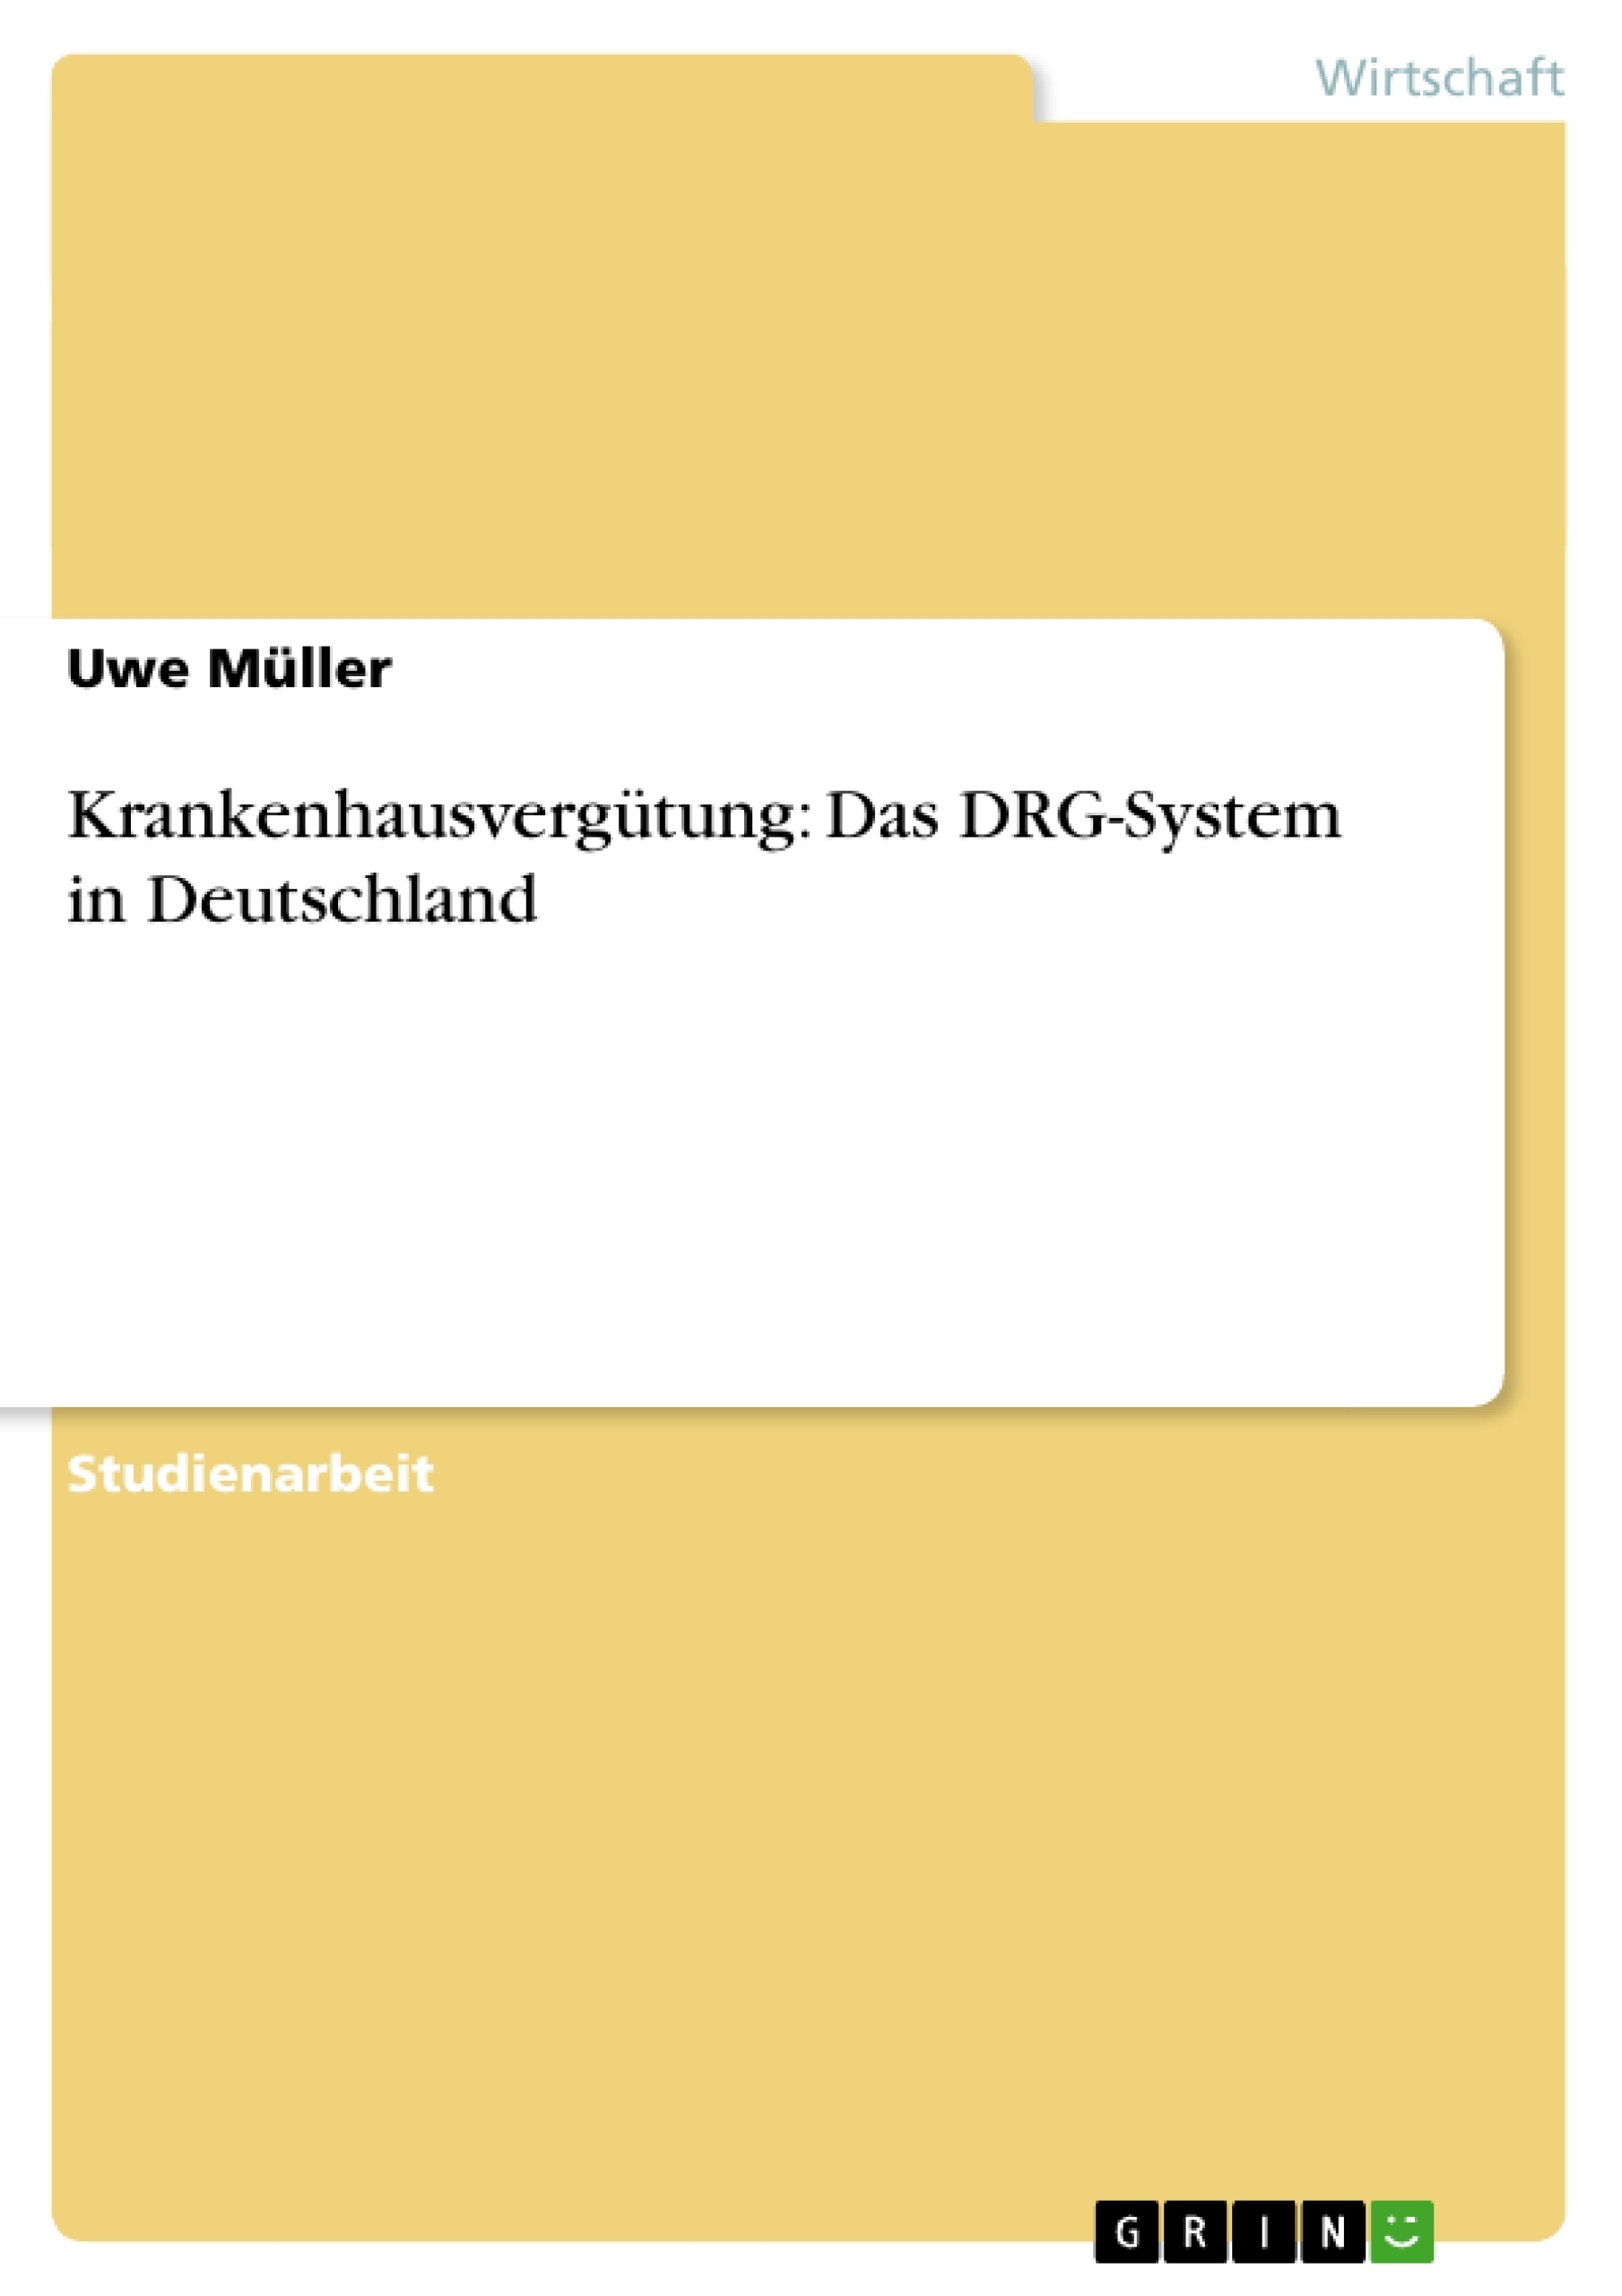 Title: Krankenhausvergütung: Das DRG-System in Deutschland